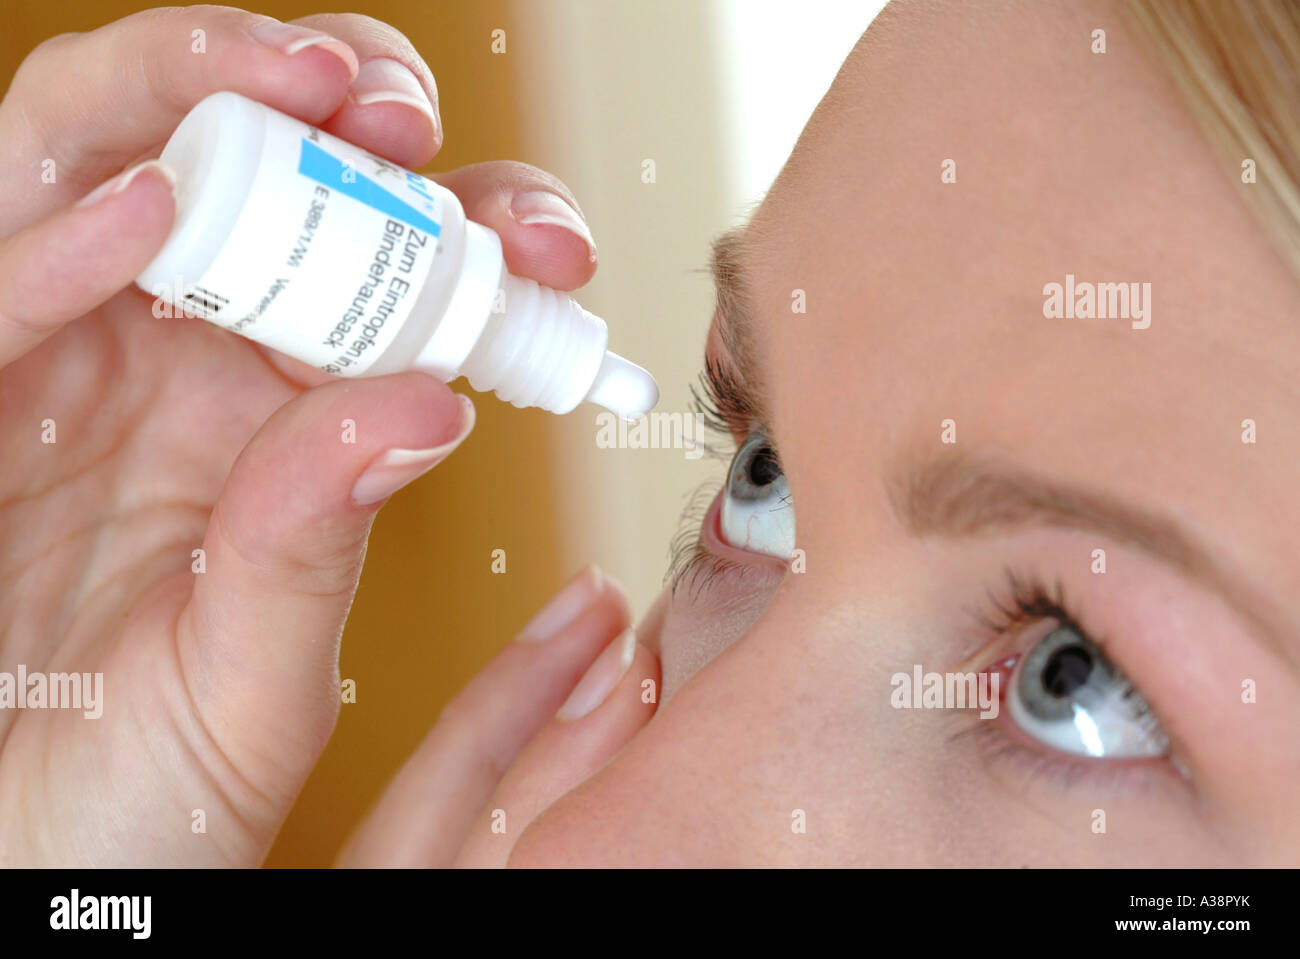 Frau verabreicht sich Augentropfen, woman using eye drops Stock Photo -  Alamy